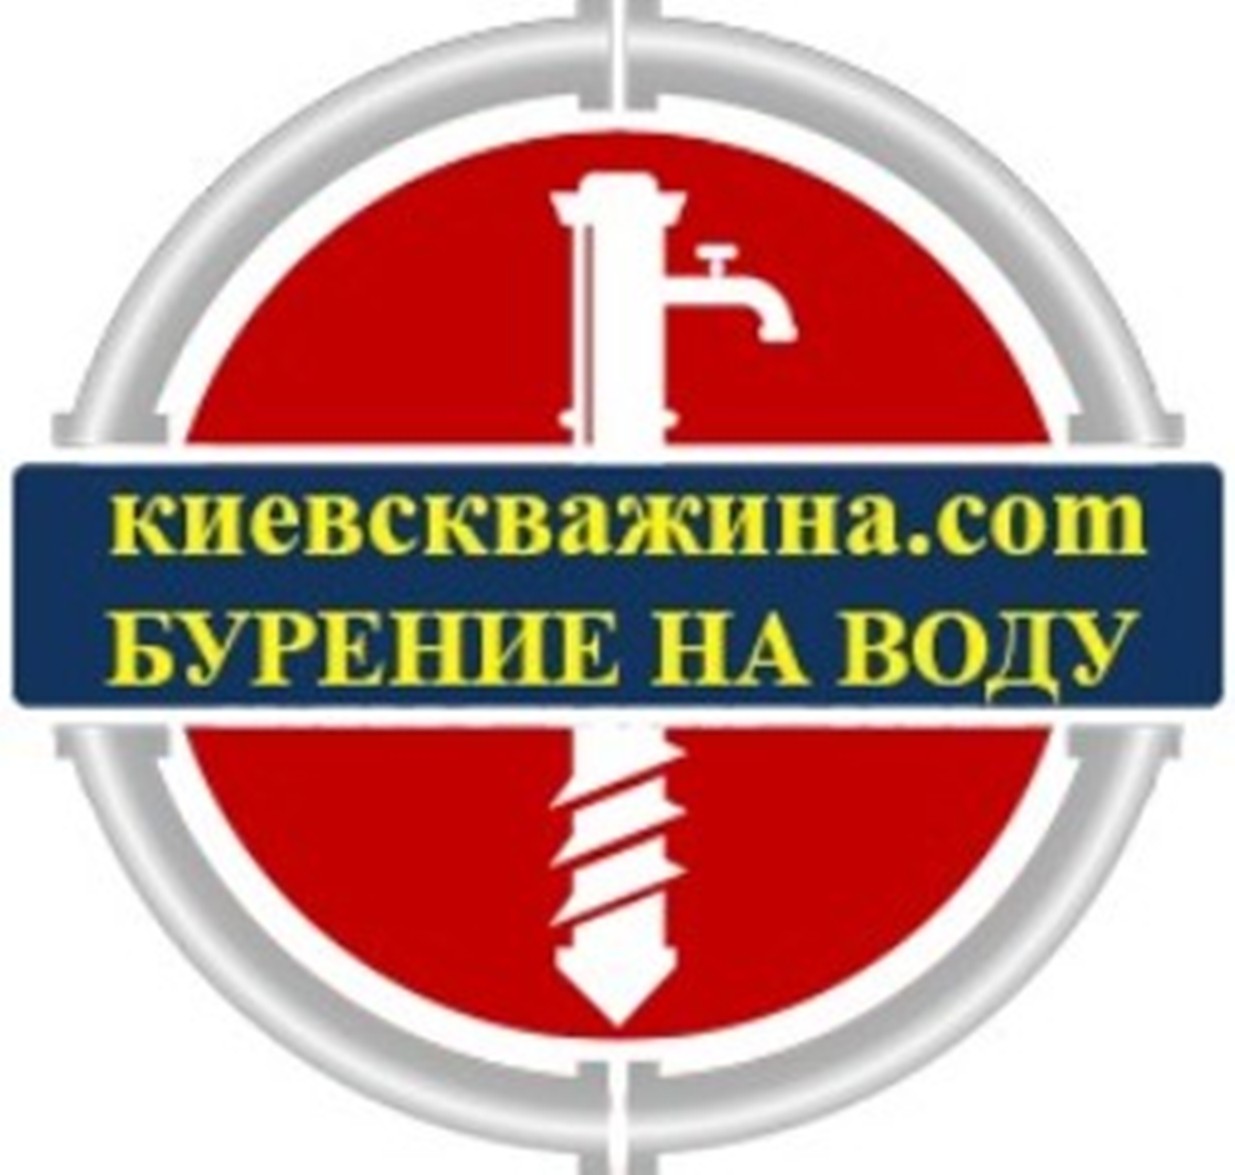 15150 Бурение скважин на воду в Киевской области.